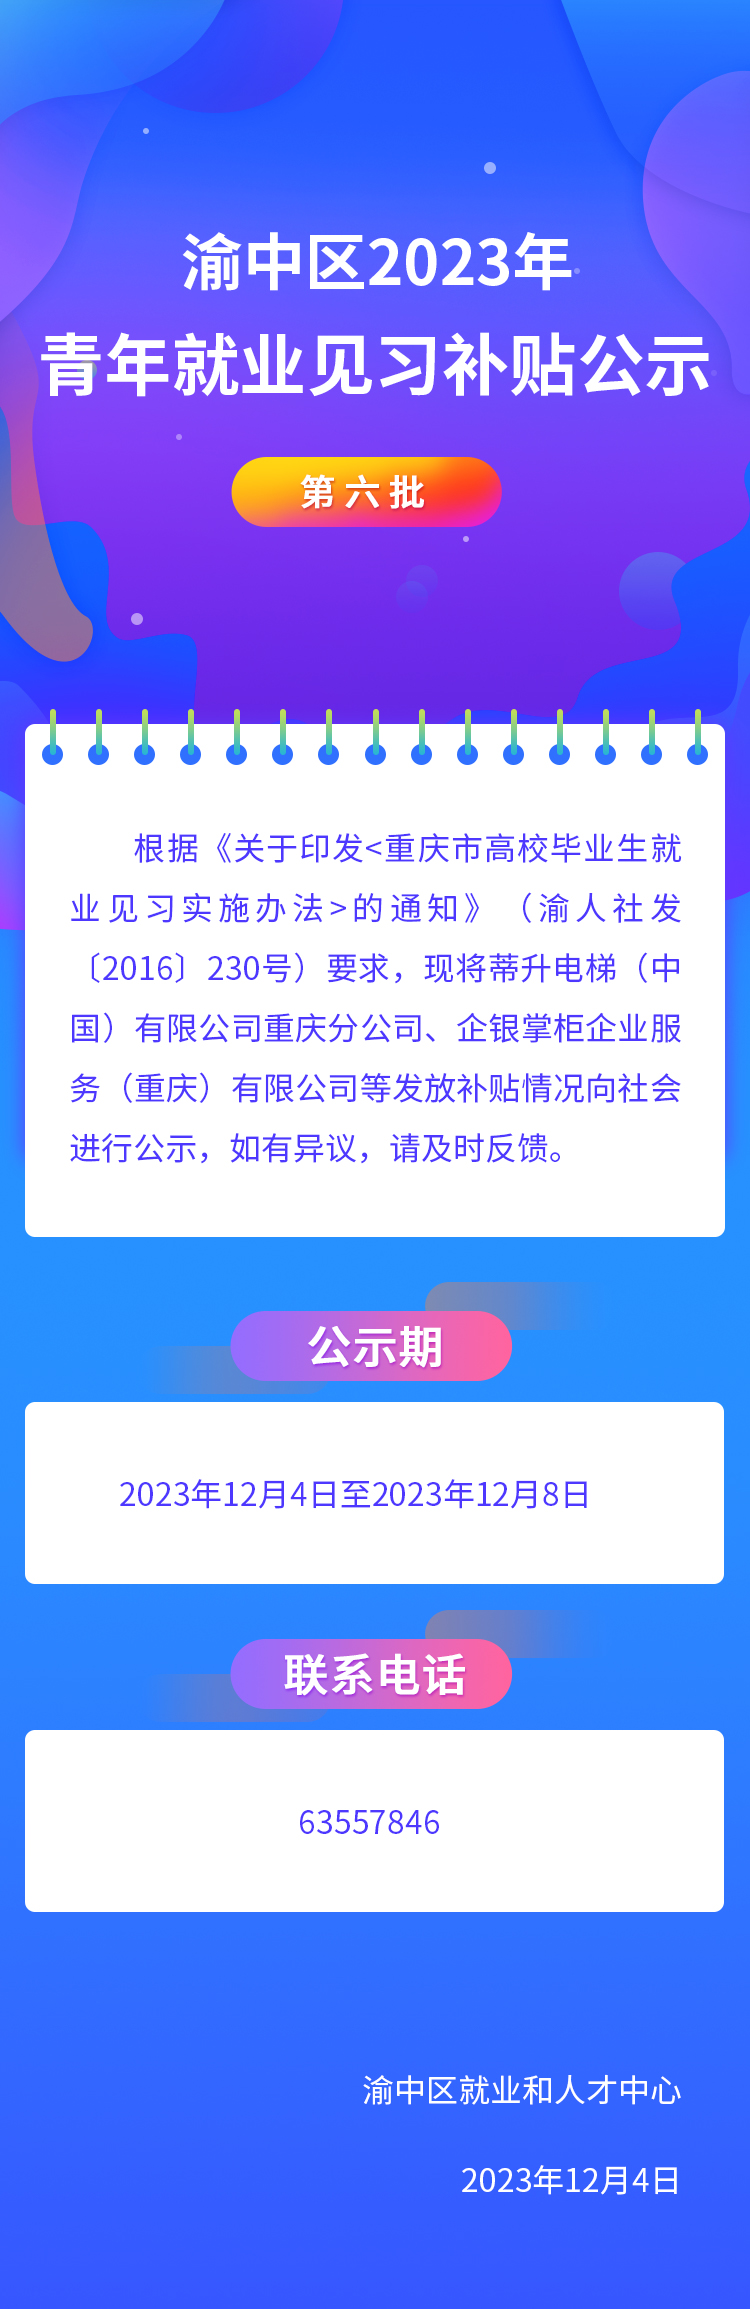 渝中区2023年青年就业见习补贴公示(第六批).jpg